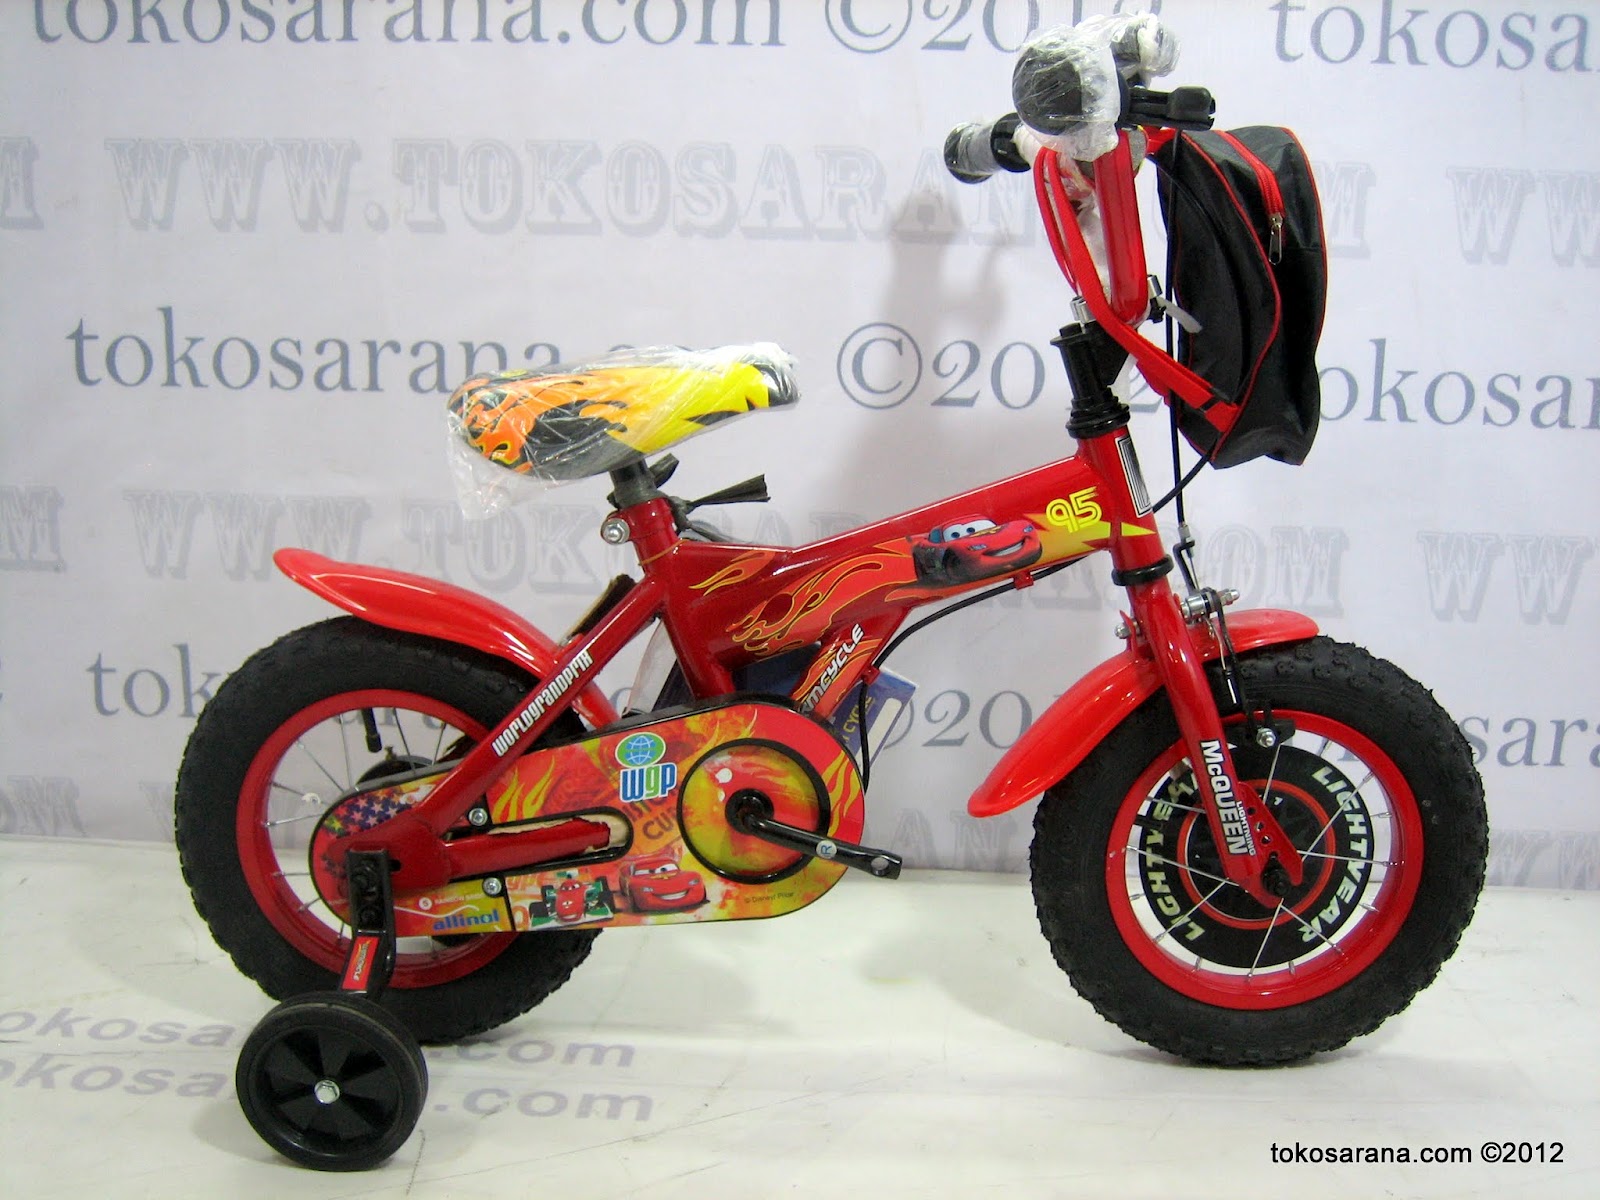 Clearance Sale: Sepeda, Mainan Anak dan Perlengkapan Bayi